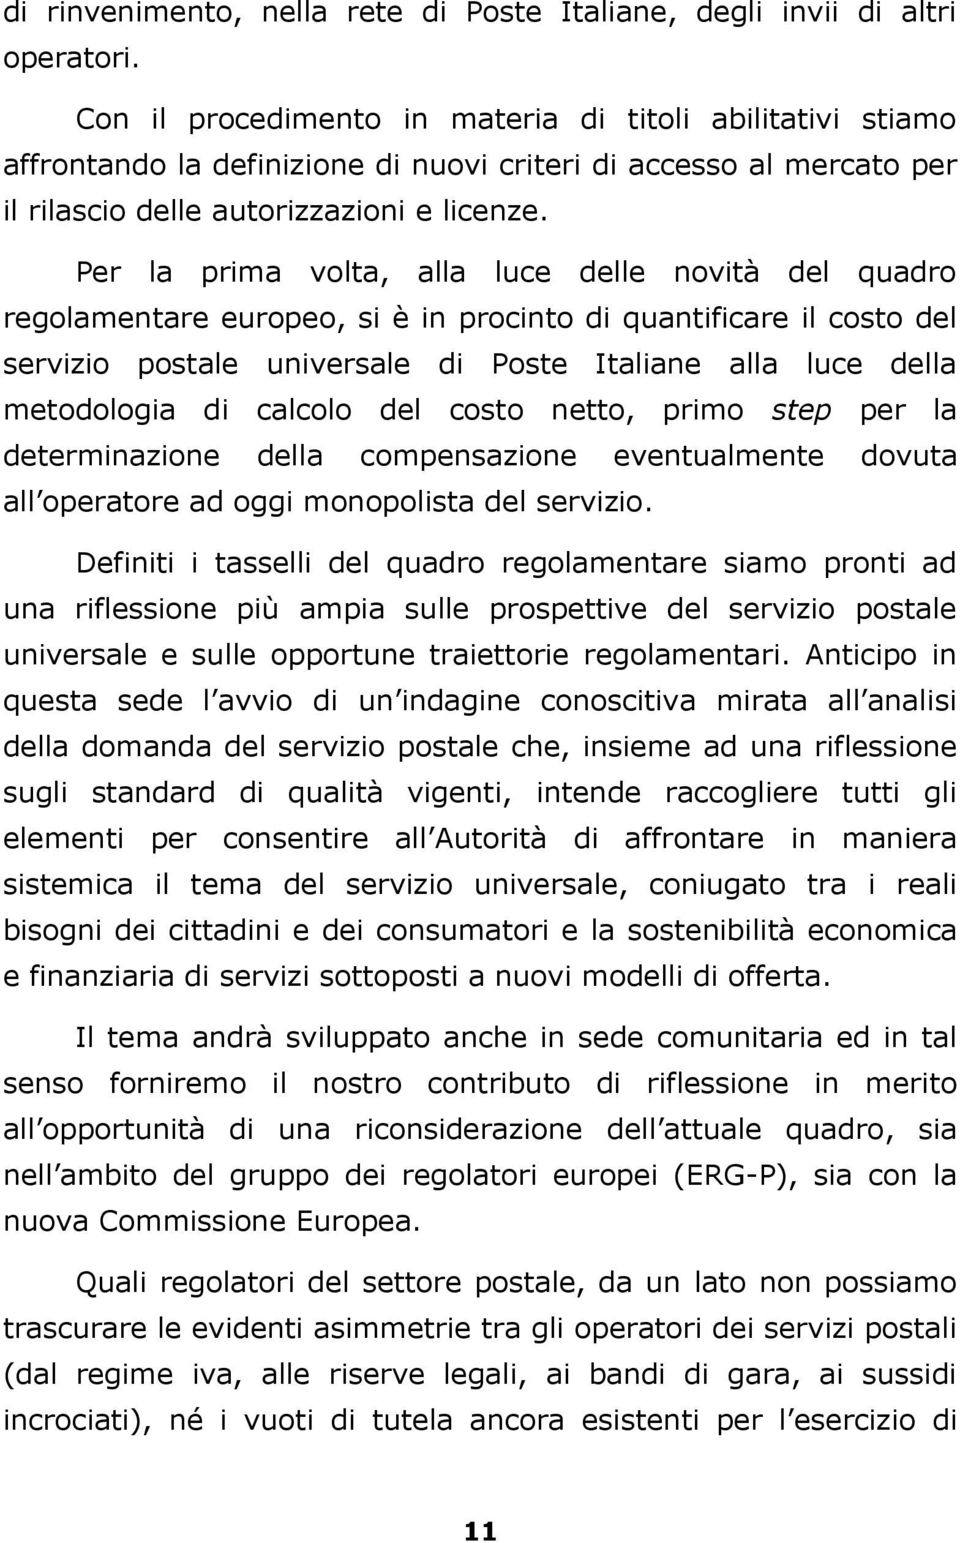 Per la prima volta, alla luce delle novità del quadro regolamentare europeo, si è in procinto di quantificare il costo del servizio postale universale di Poste Italiane alla luce della metodologia di